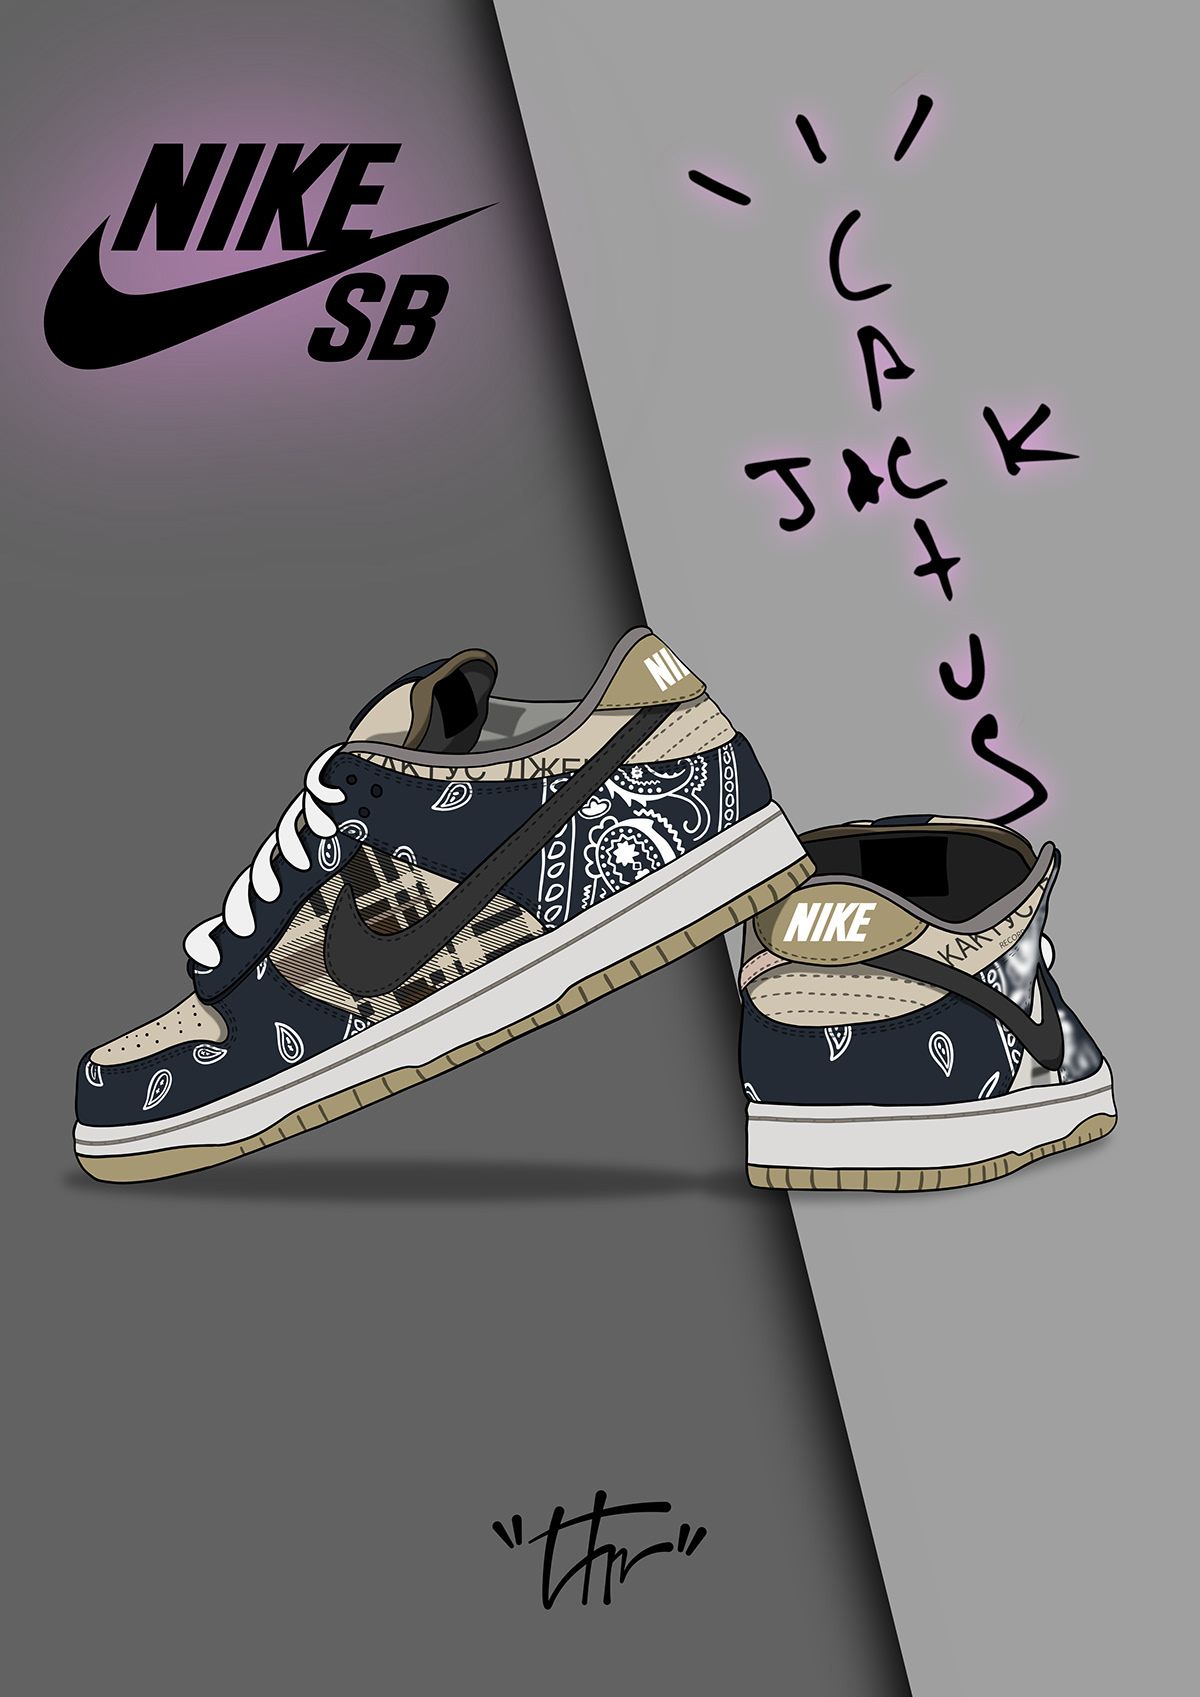 Nike sb dunk low travis scott on behance shoes wallpaper nike sb dunk low travis scott sneakers wallpaper